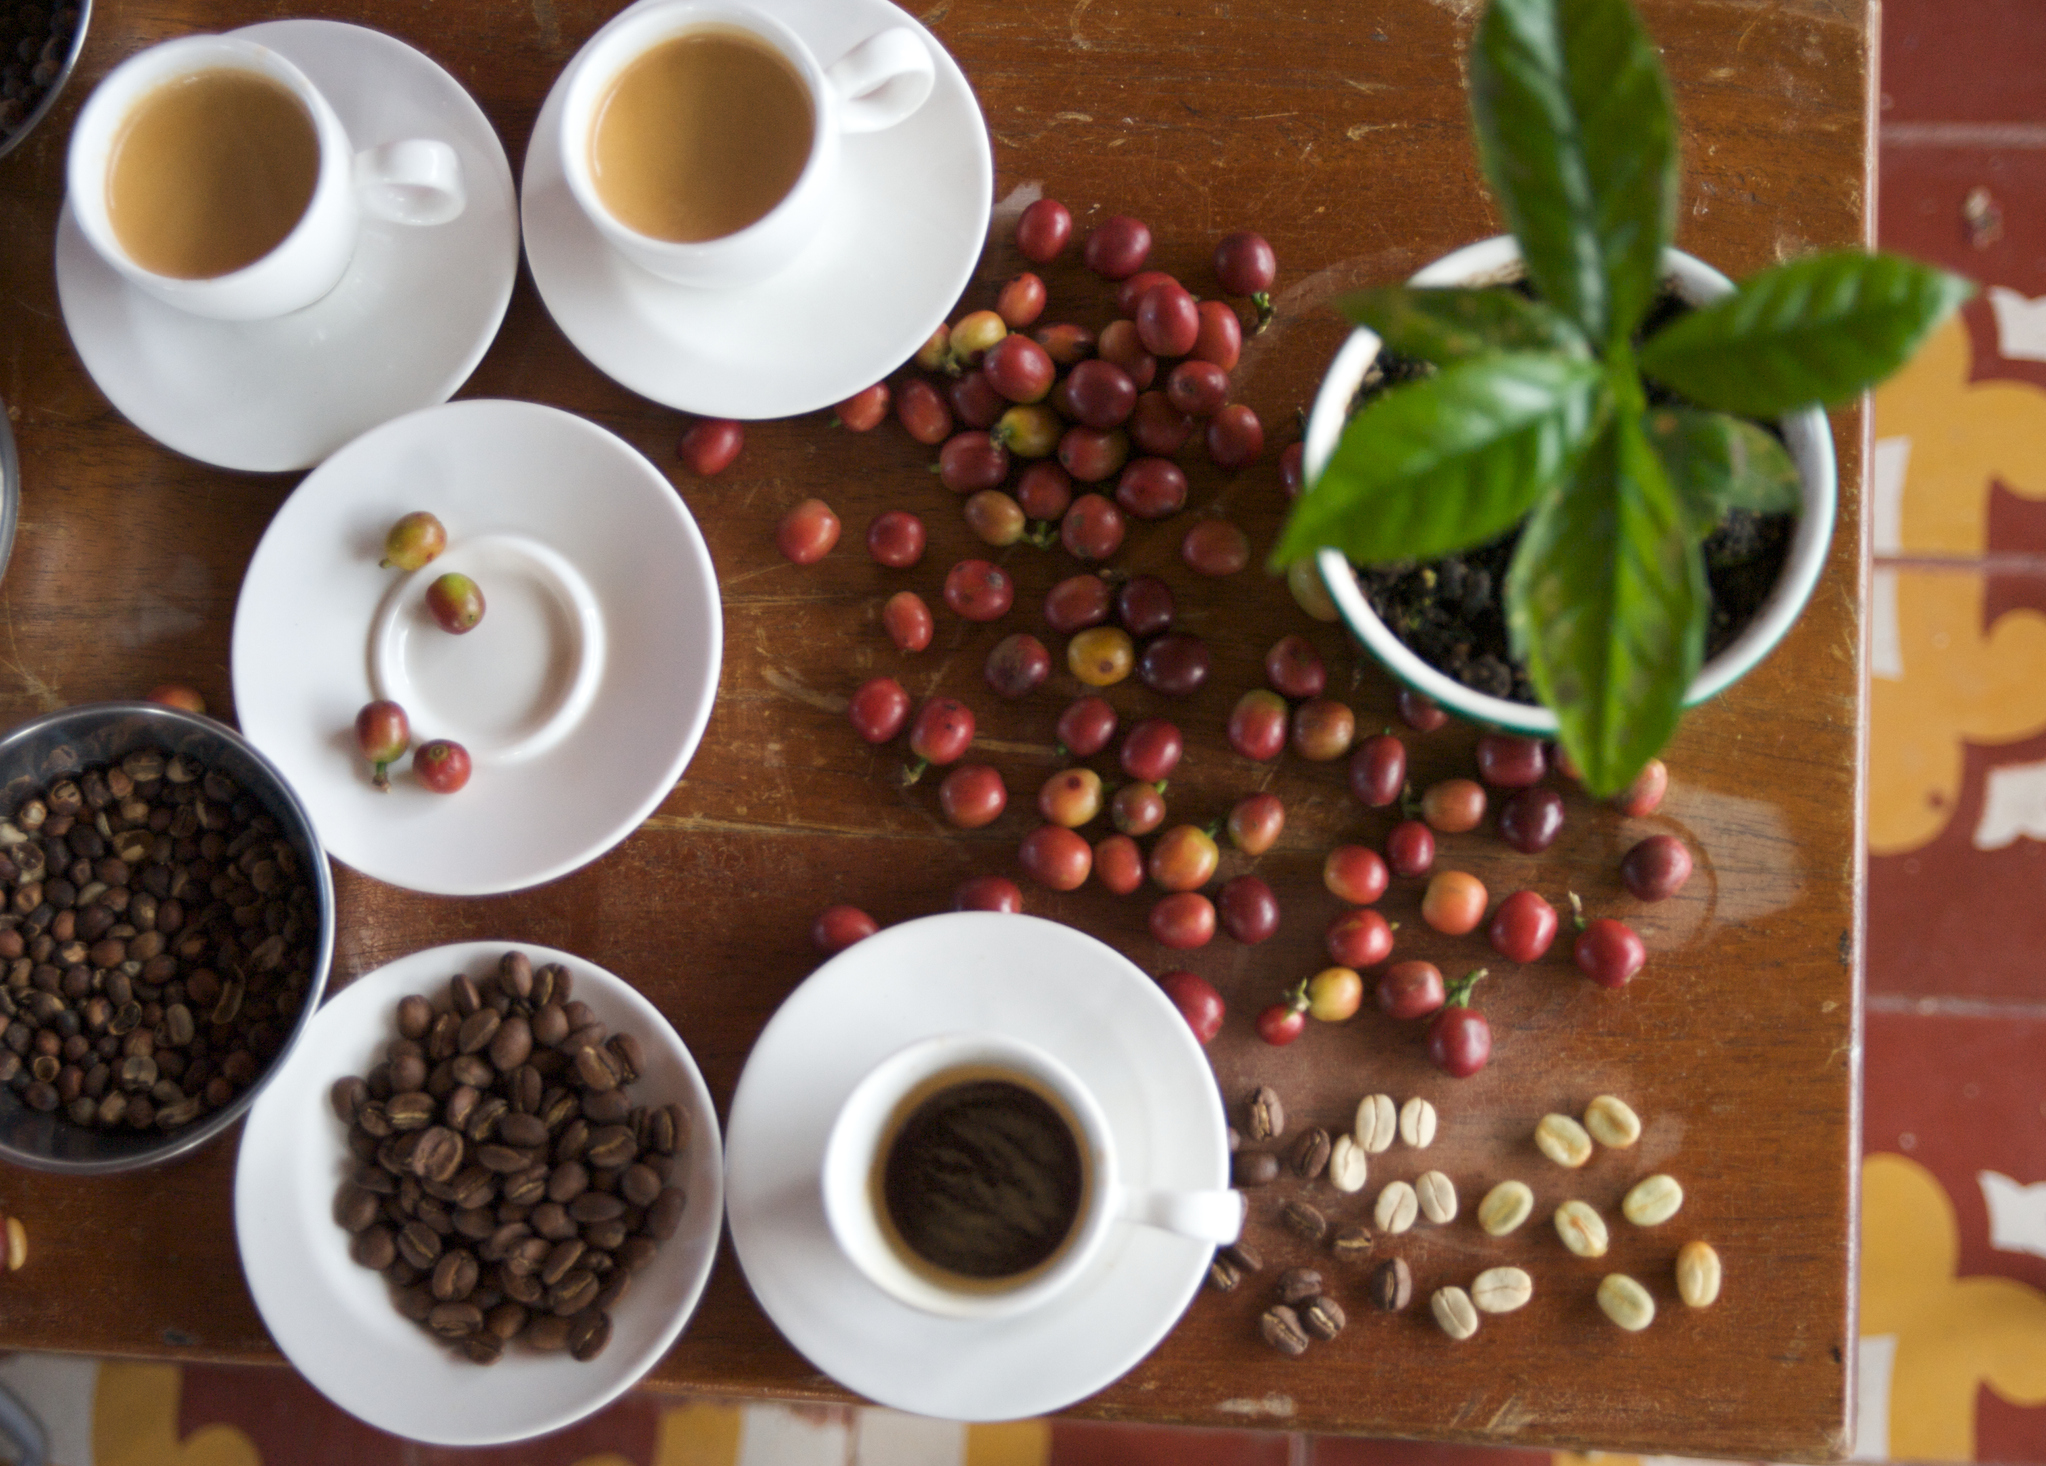 Cuál es el origen real del café, no es colombiano